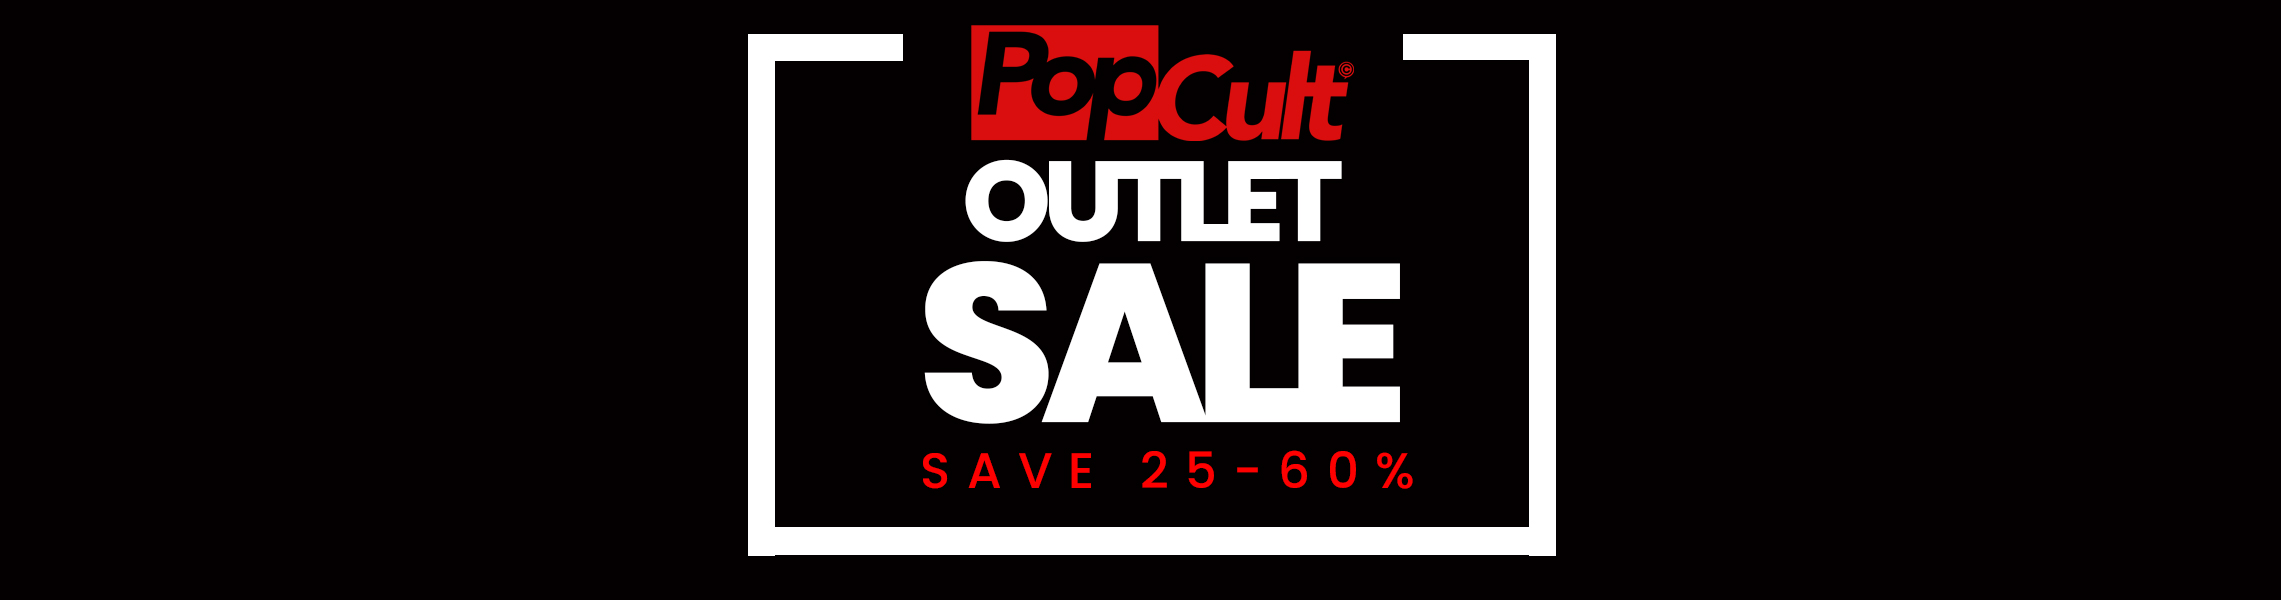 Pop Cult Outlet Sale